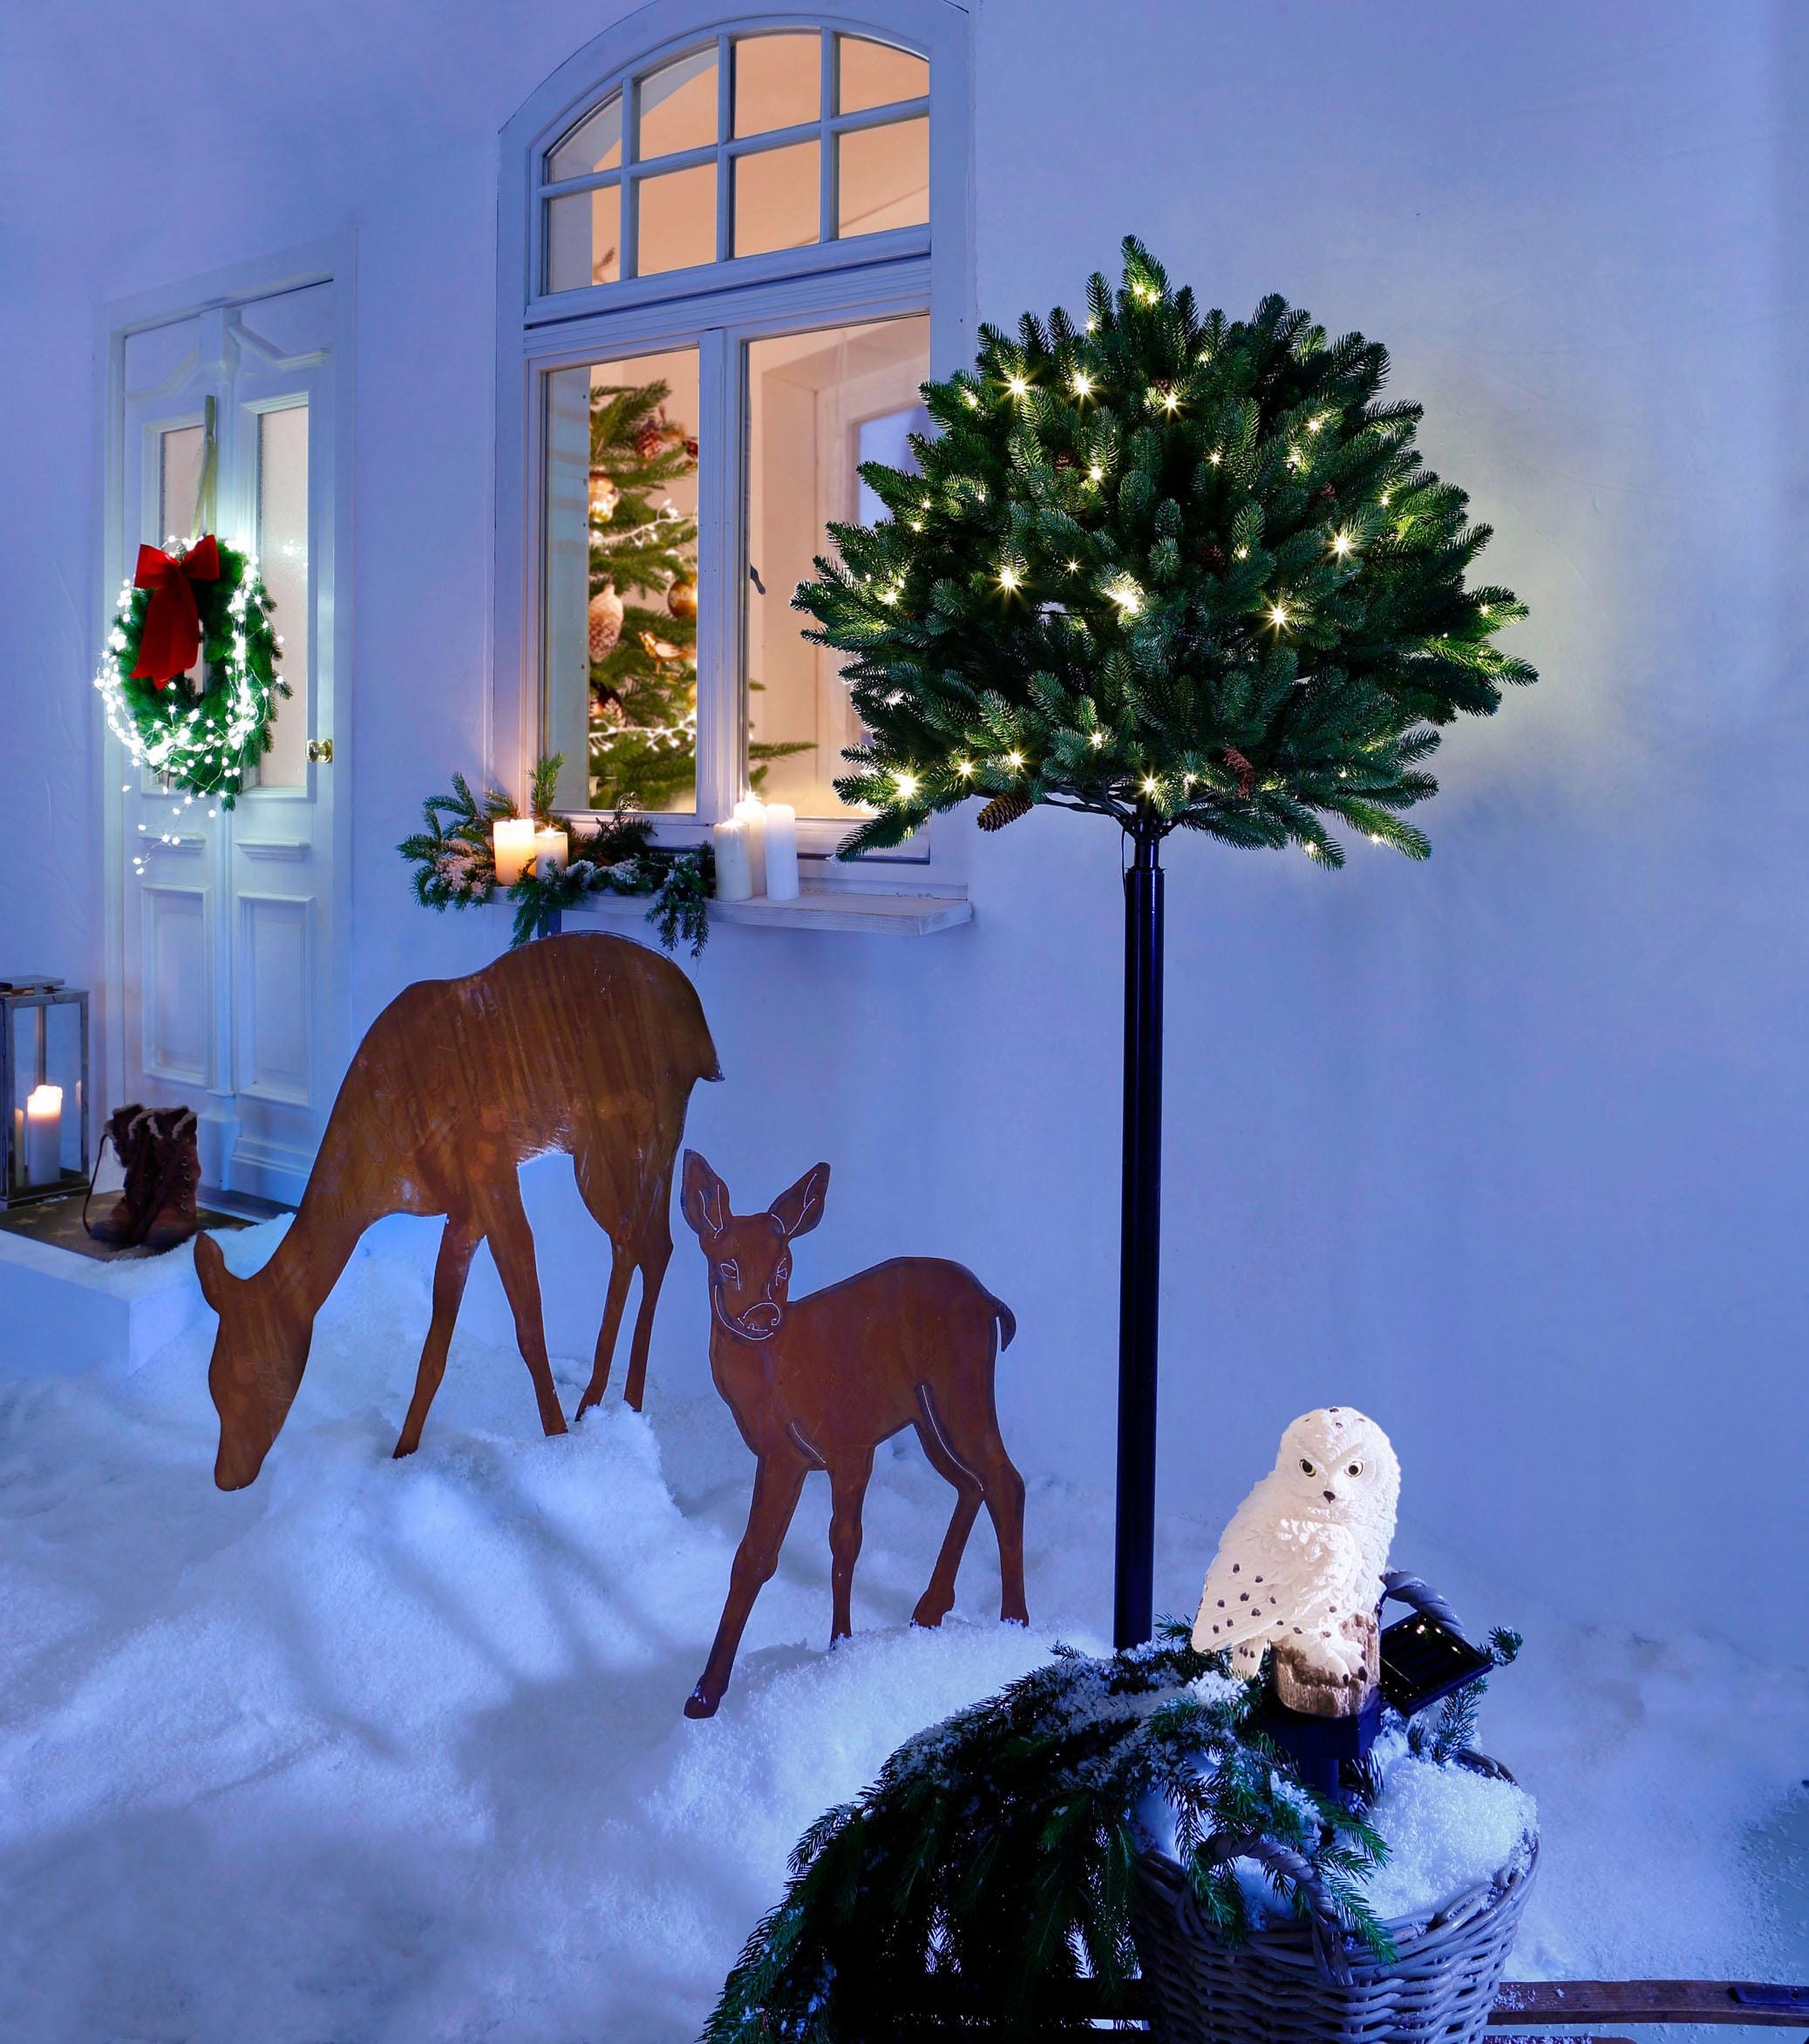 my home Weihnachtsfigur »Reh, Weihnachtsdeko im bei kaufen OTTO aussen«, Rost-Look Gartenstecker